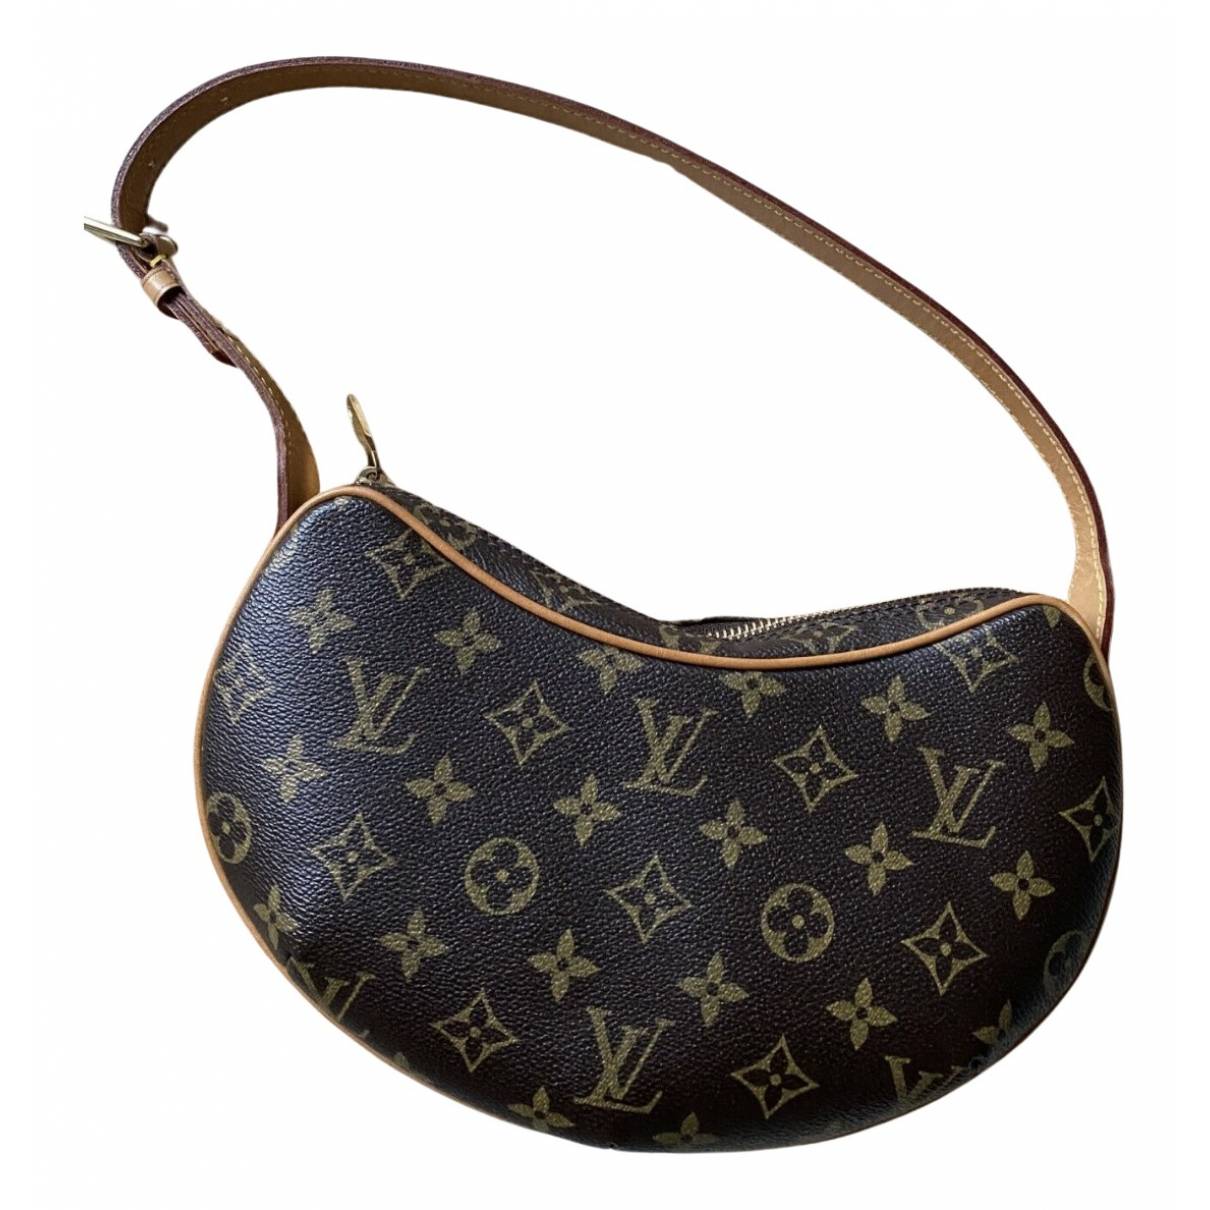 Louis Vuitton Croissant PM - Brown Shoulder Bags, Handbags